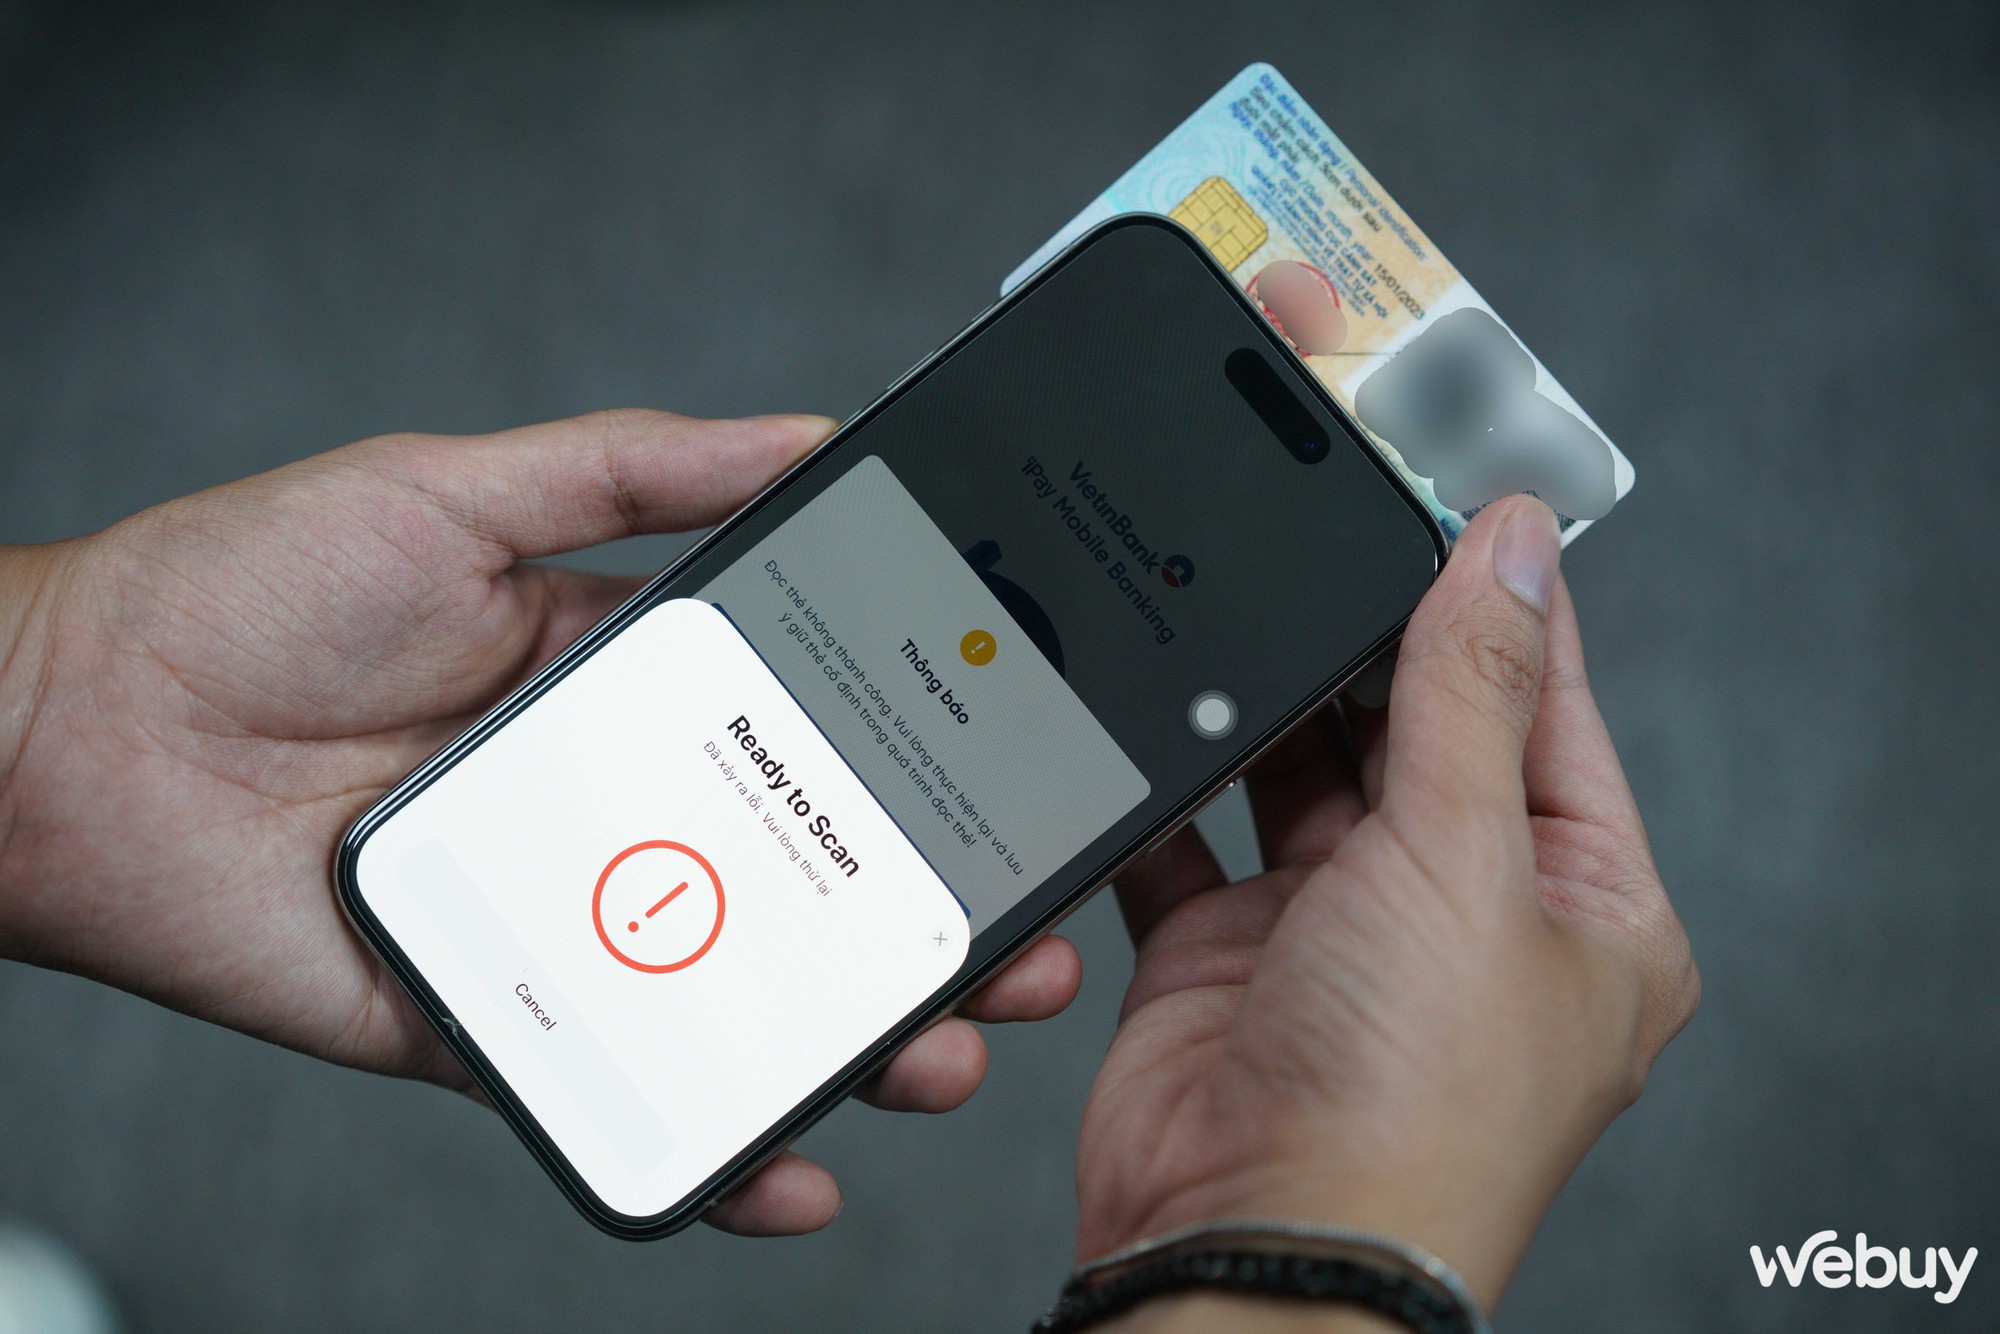 Người dùng Việt kêu trời vì iPhone quét NFC CCCD xác thực ngân hàng mãi không xong, chuyển sang Android thì 